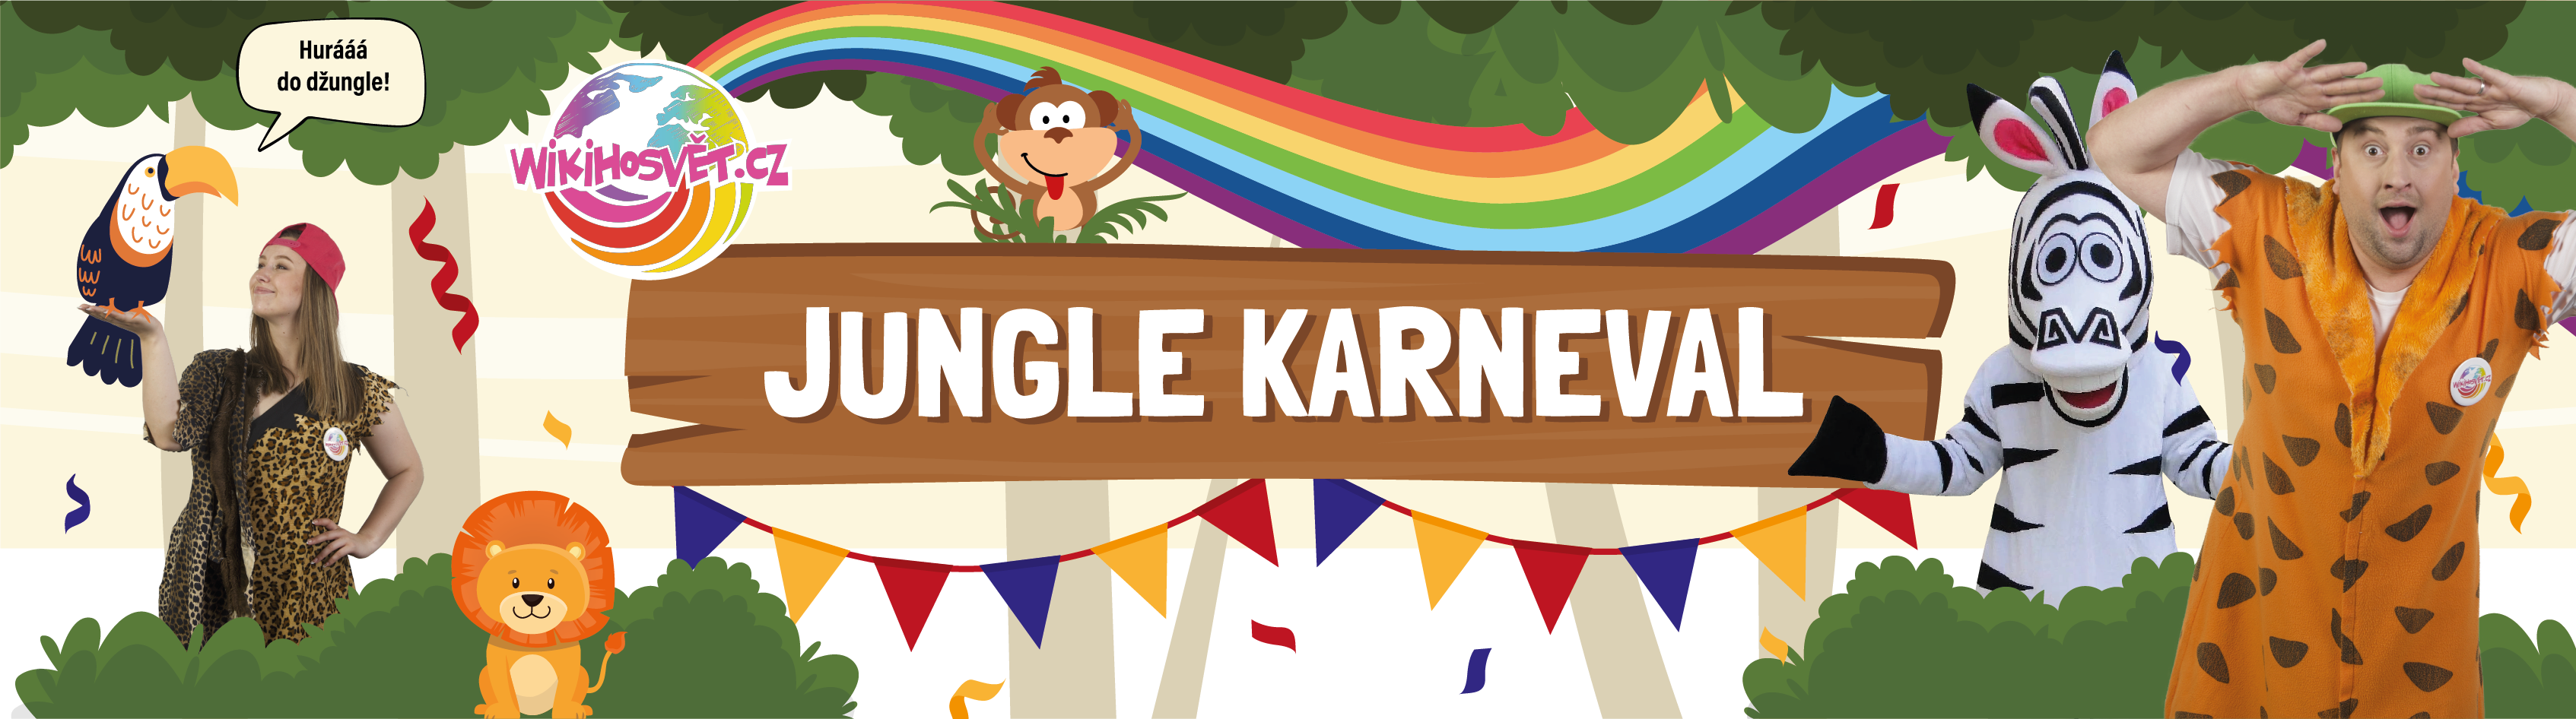 Jungle-karneval